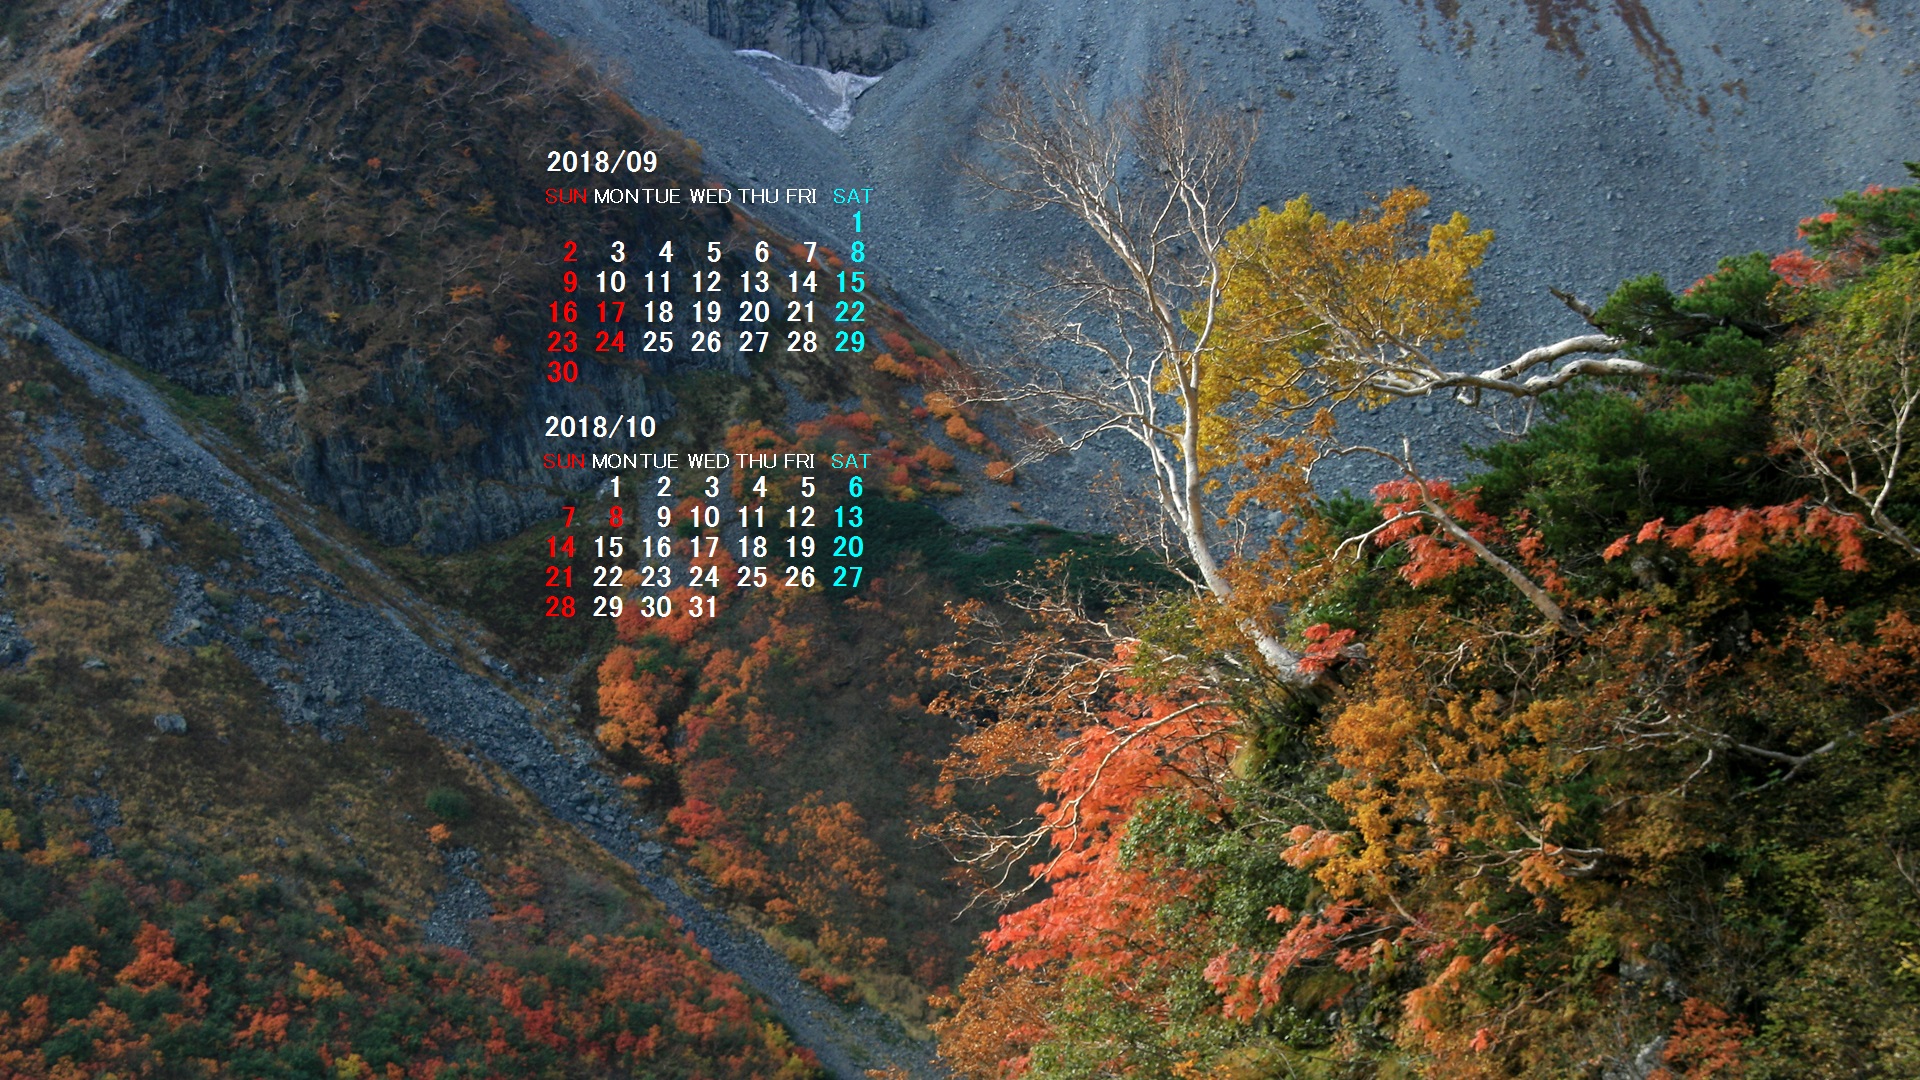 18年9月カレンダー壁紙 カレンダー壁紙館 昴 無料ワイド